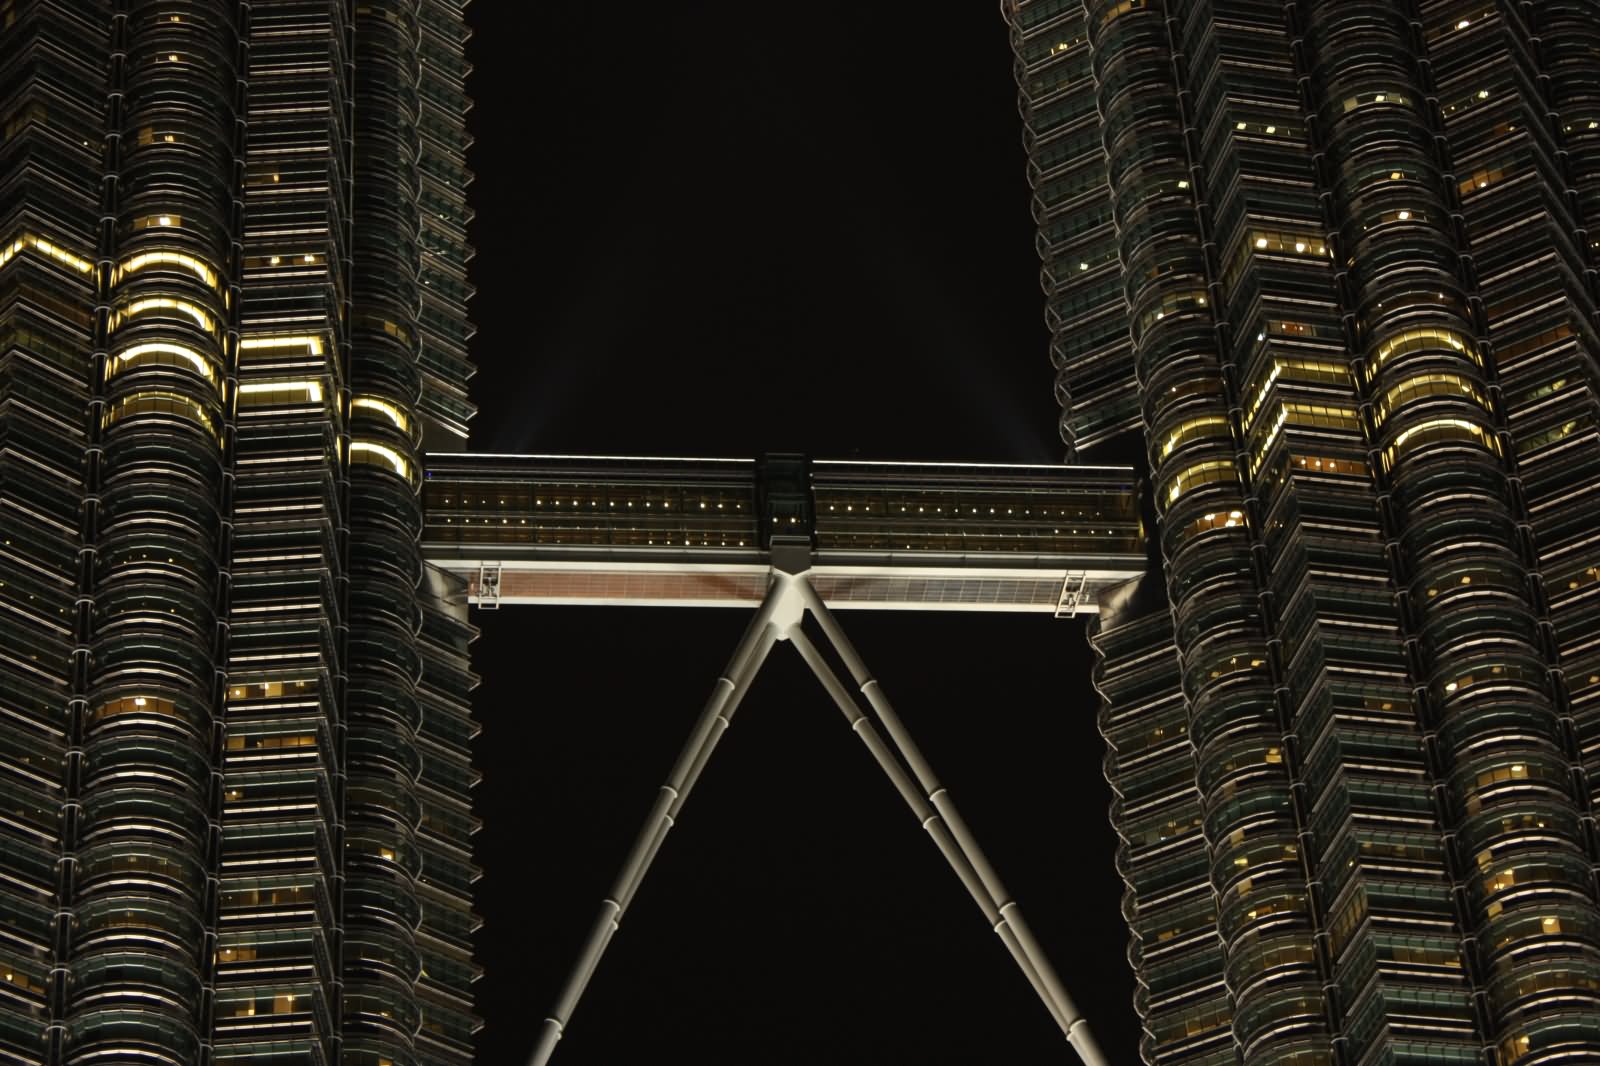 Petronas Towers Sky Bridge At Night